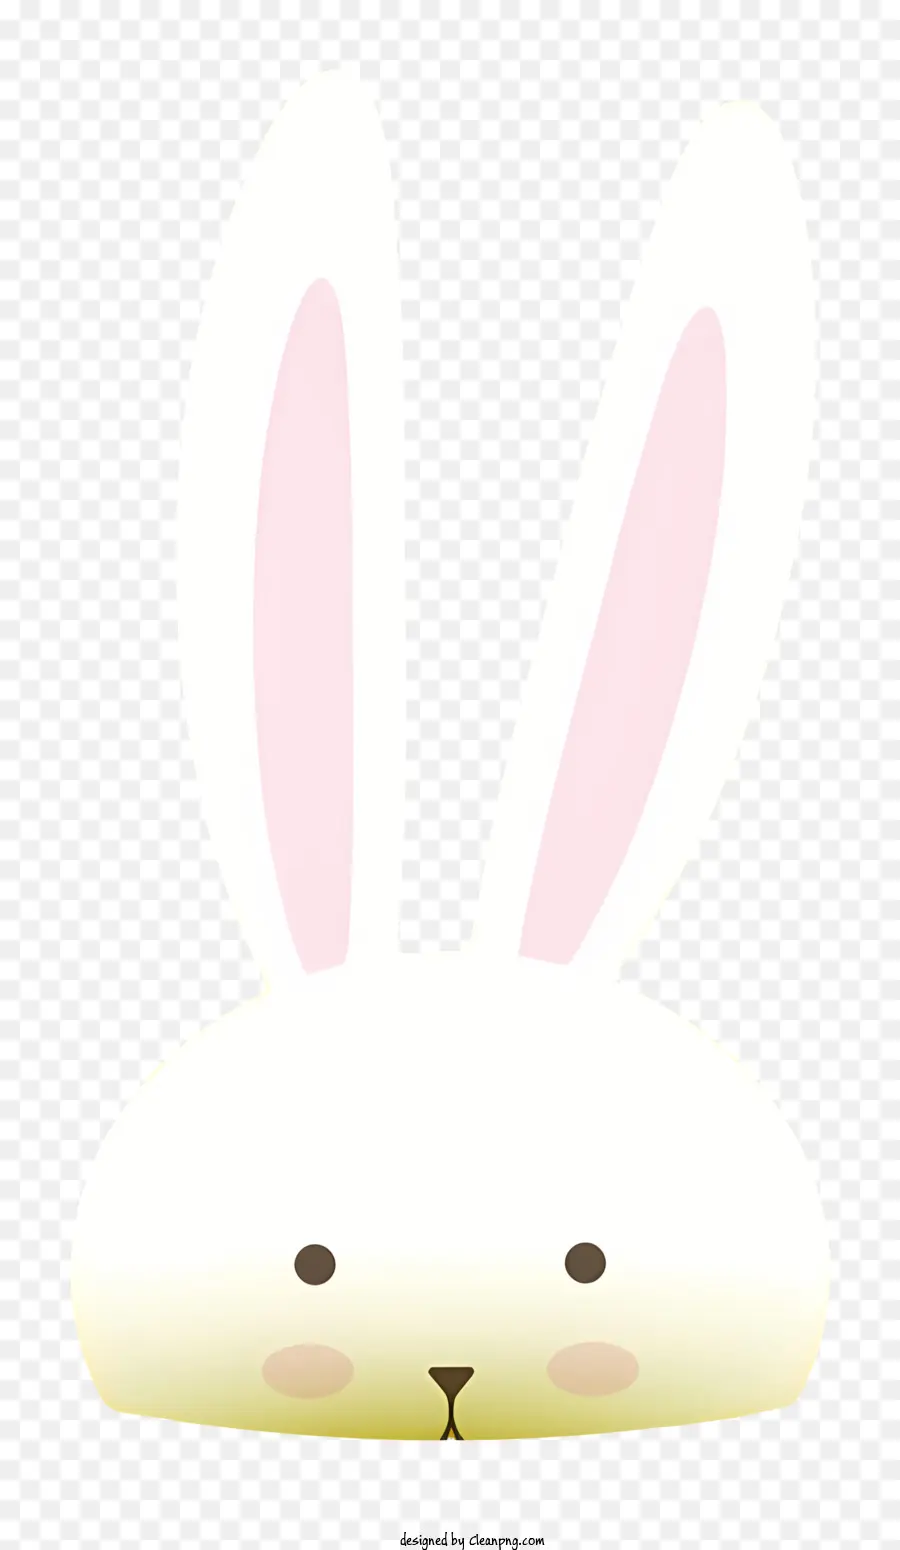 Bunny Face Thỏ trắng mắt màu hồng đứng trên chân sau - Thỏ trắng có đôi mắt hồng, đứng một cách cảnh giác